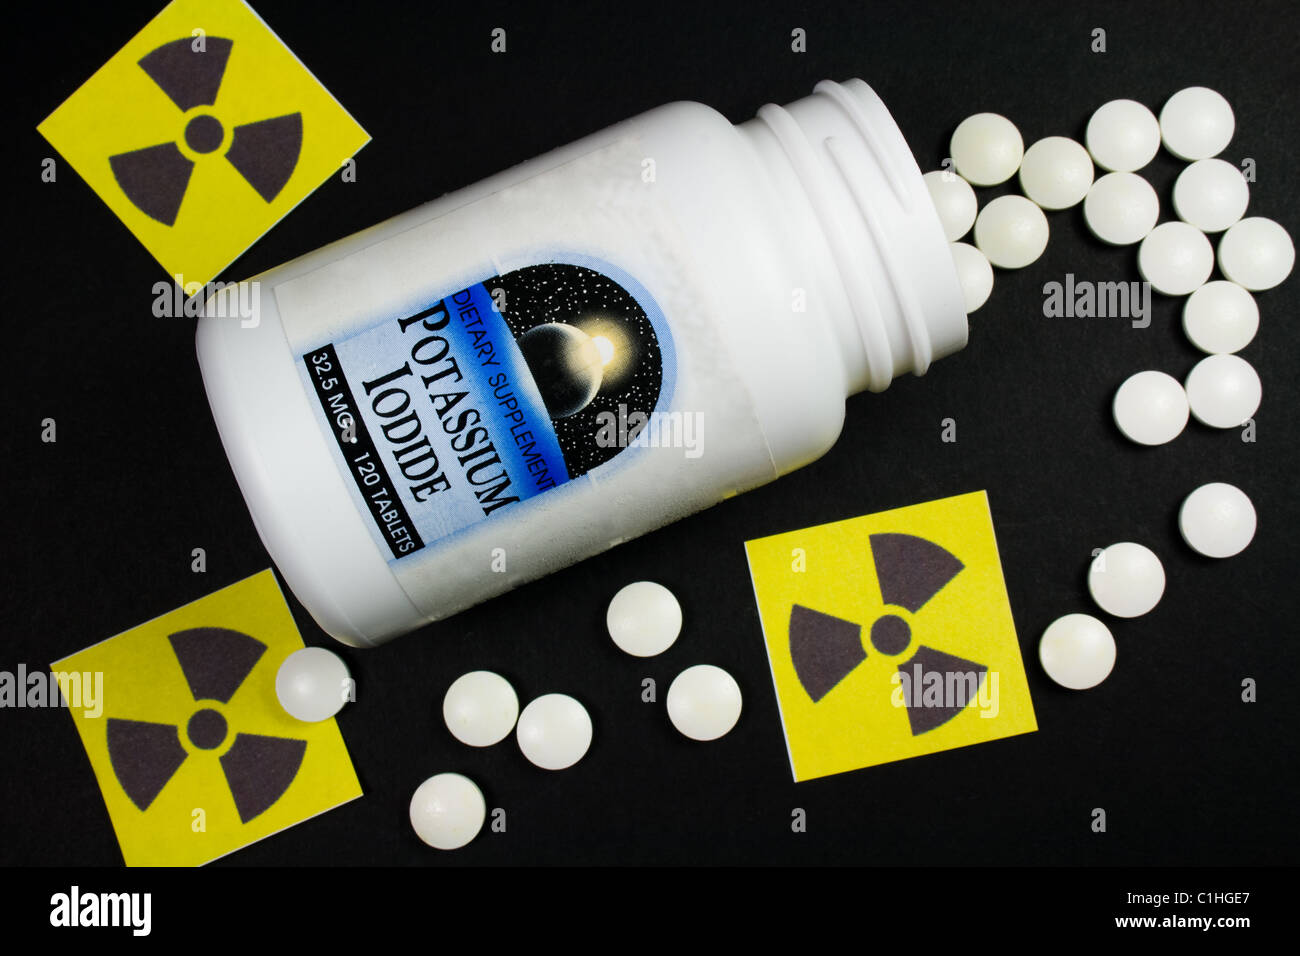 Kaliumjodid-Tabletten - Behandlung für Strahlenbelastung (Jodtabletten) Stockfoto